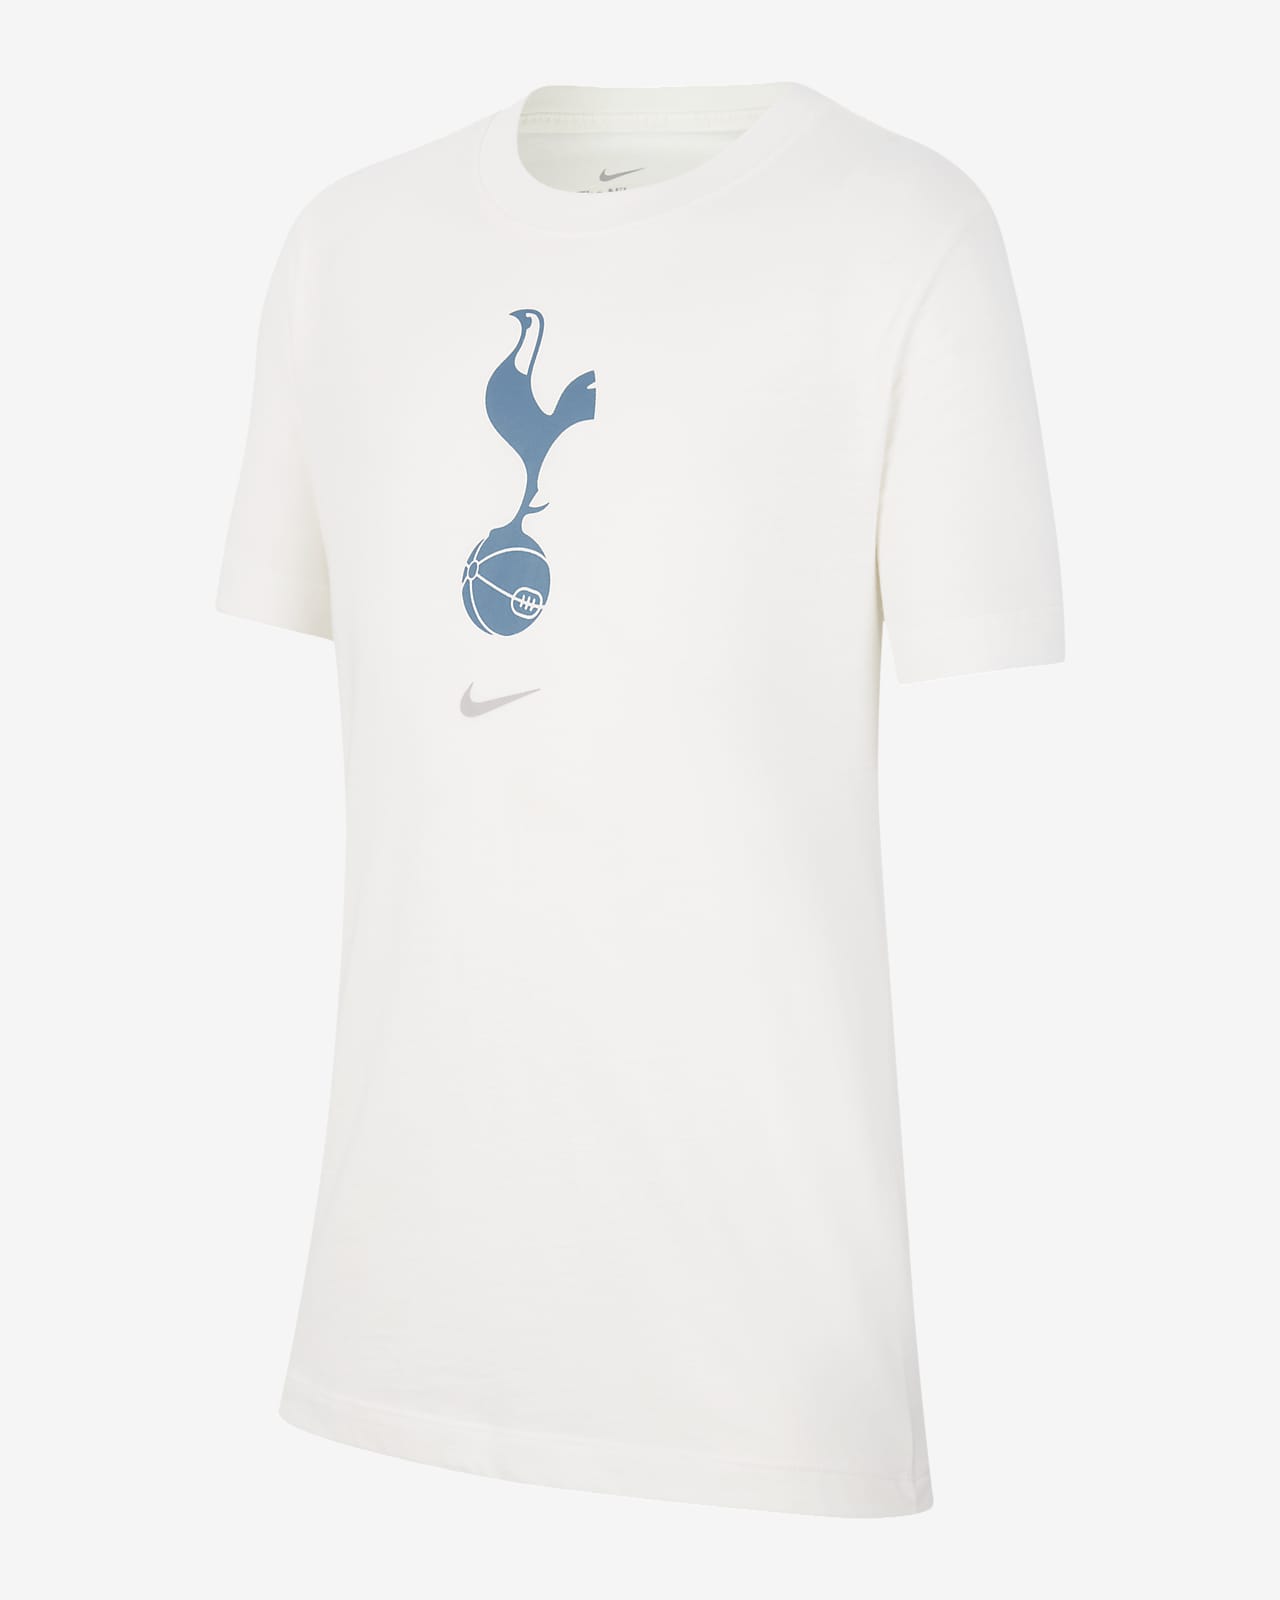 Tottenham Crest Camiseta - Niño/a. Nike ES